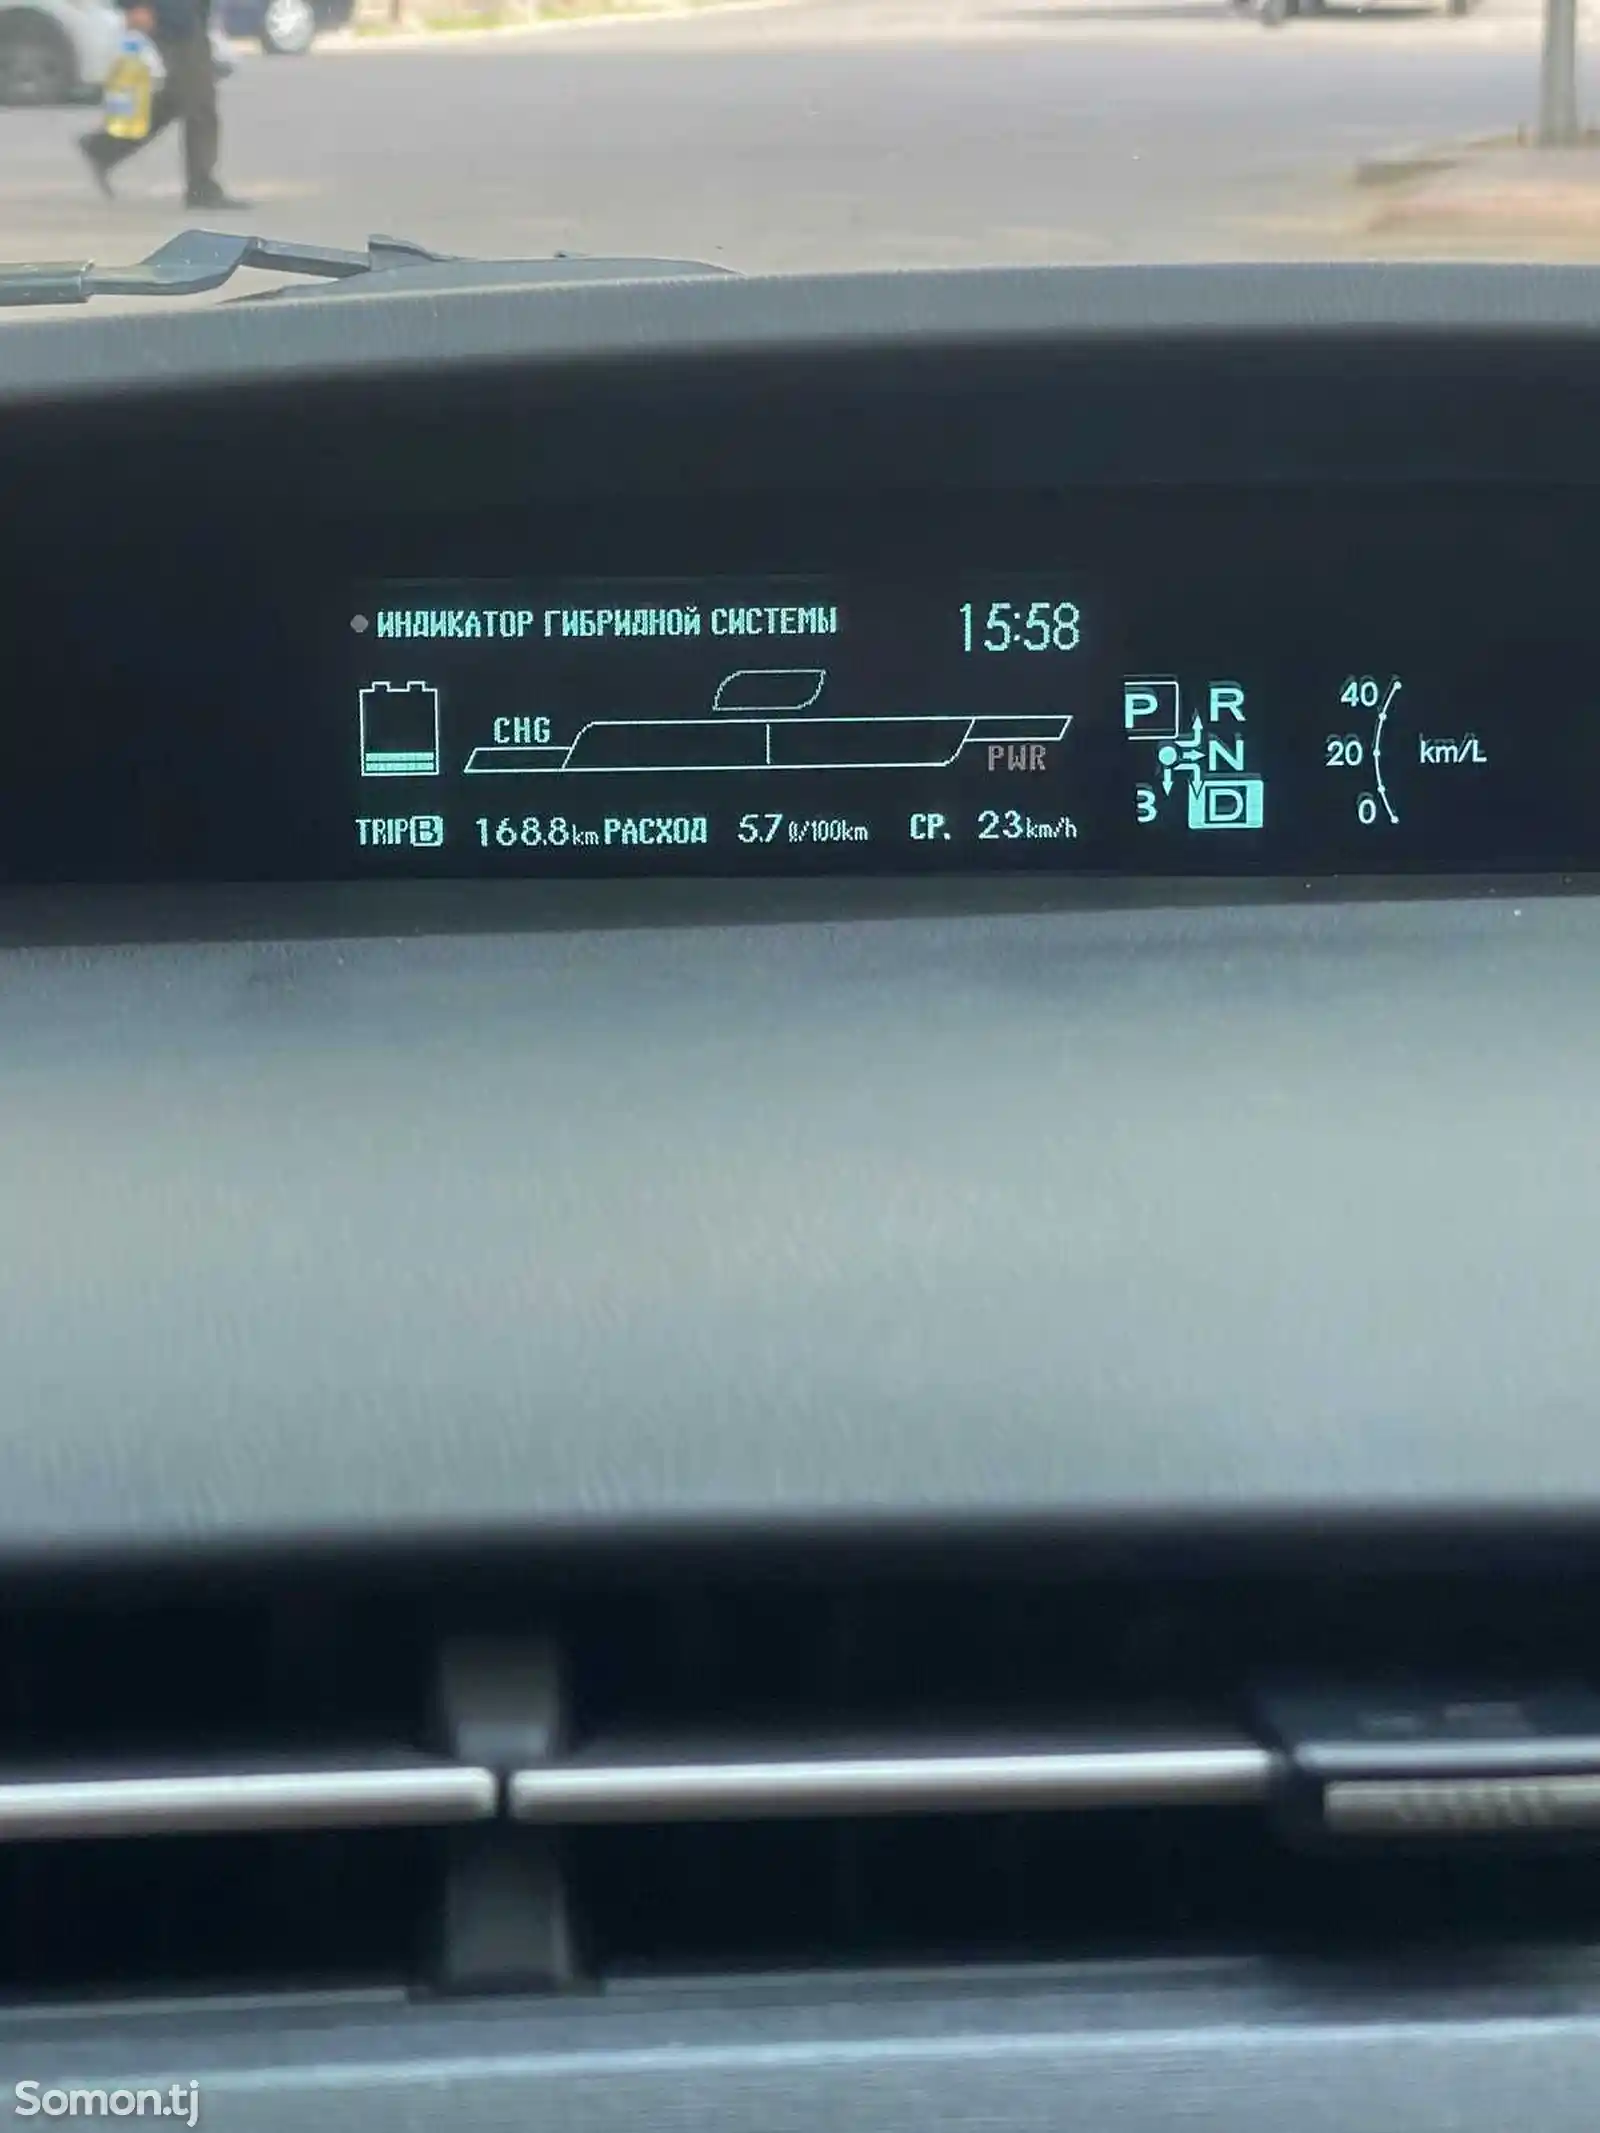 Руссификация BMW и Prius 30-7